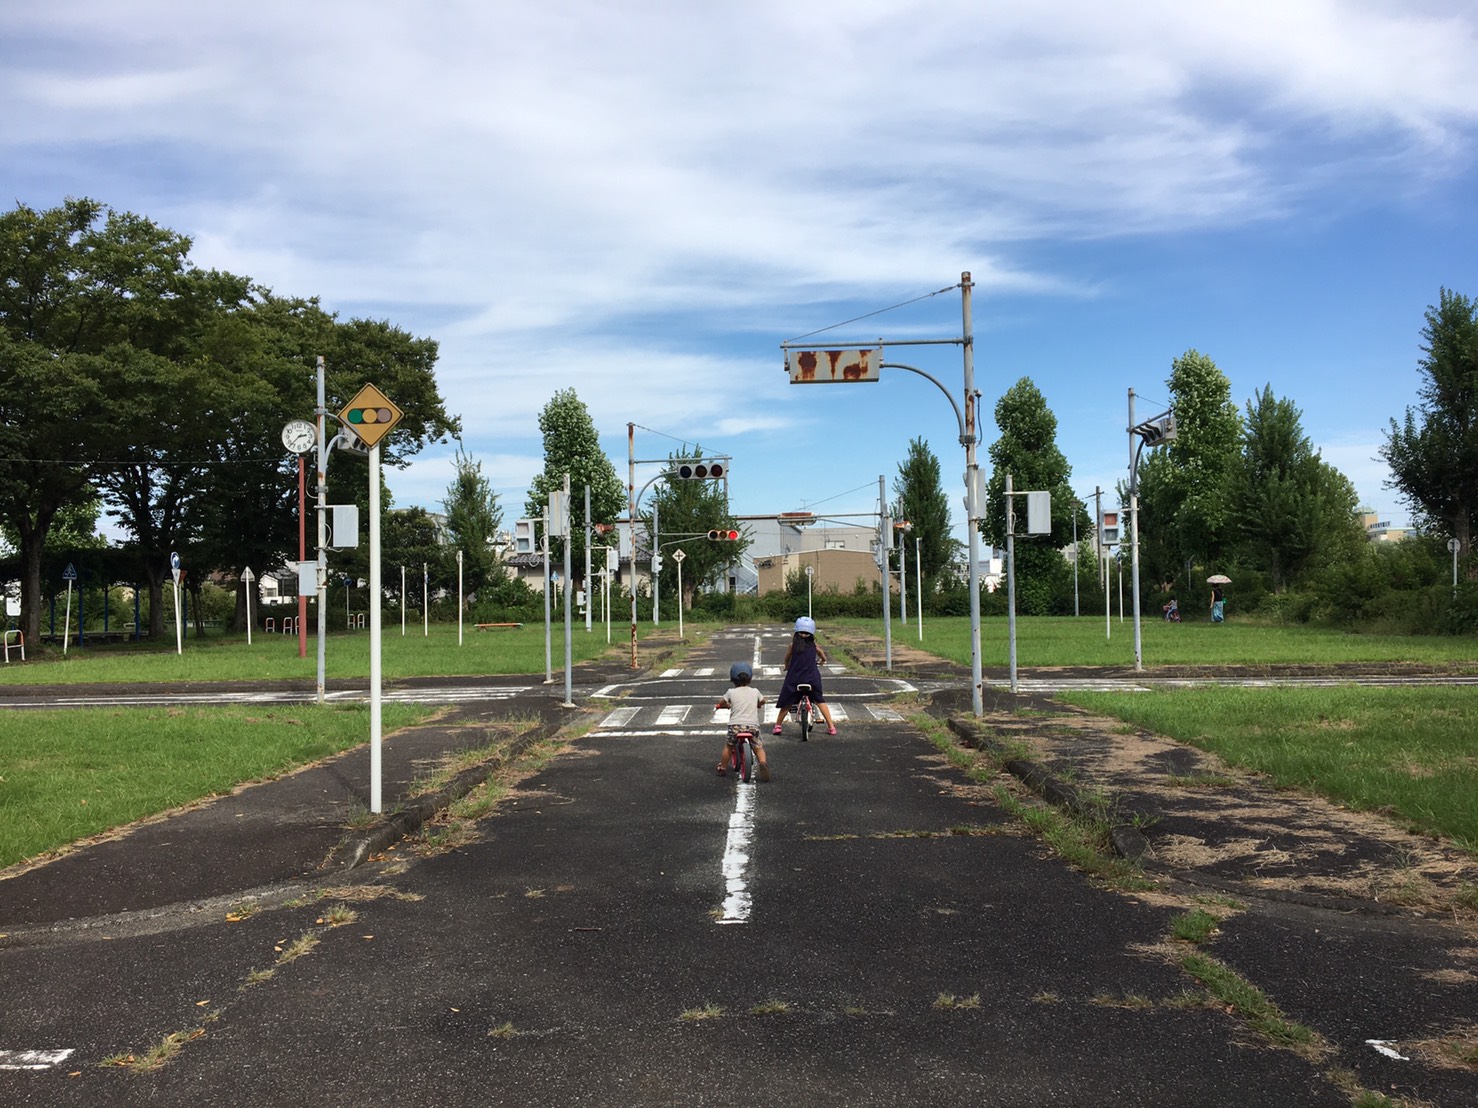 子連れで楽しめるスポット 荒田公園で自転車の練習 マルホデザイン